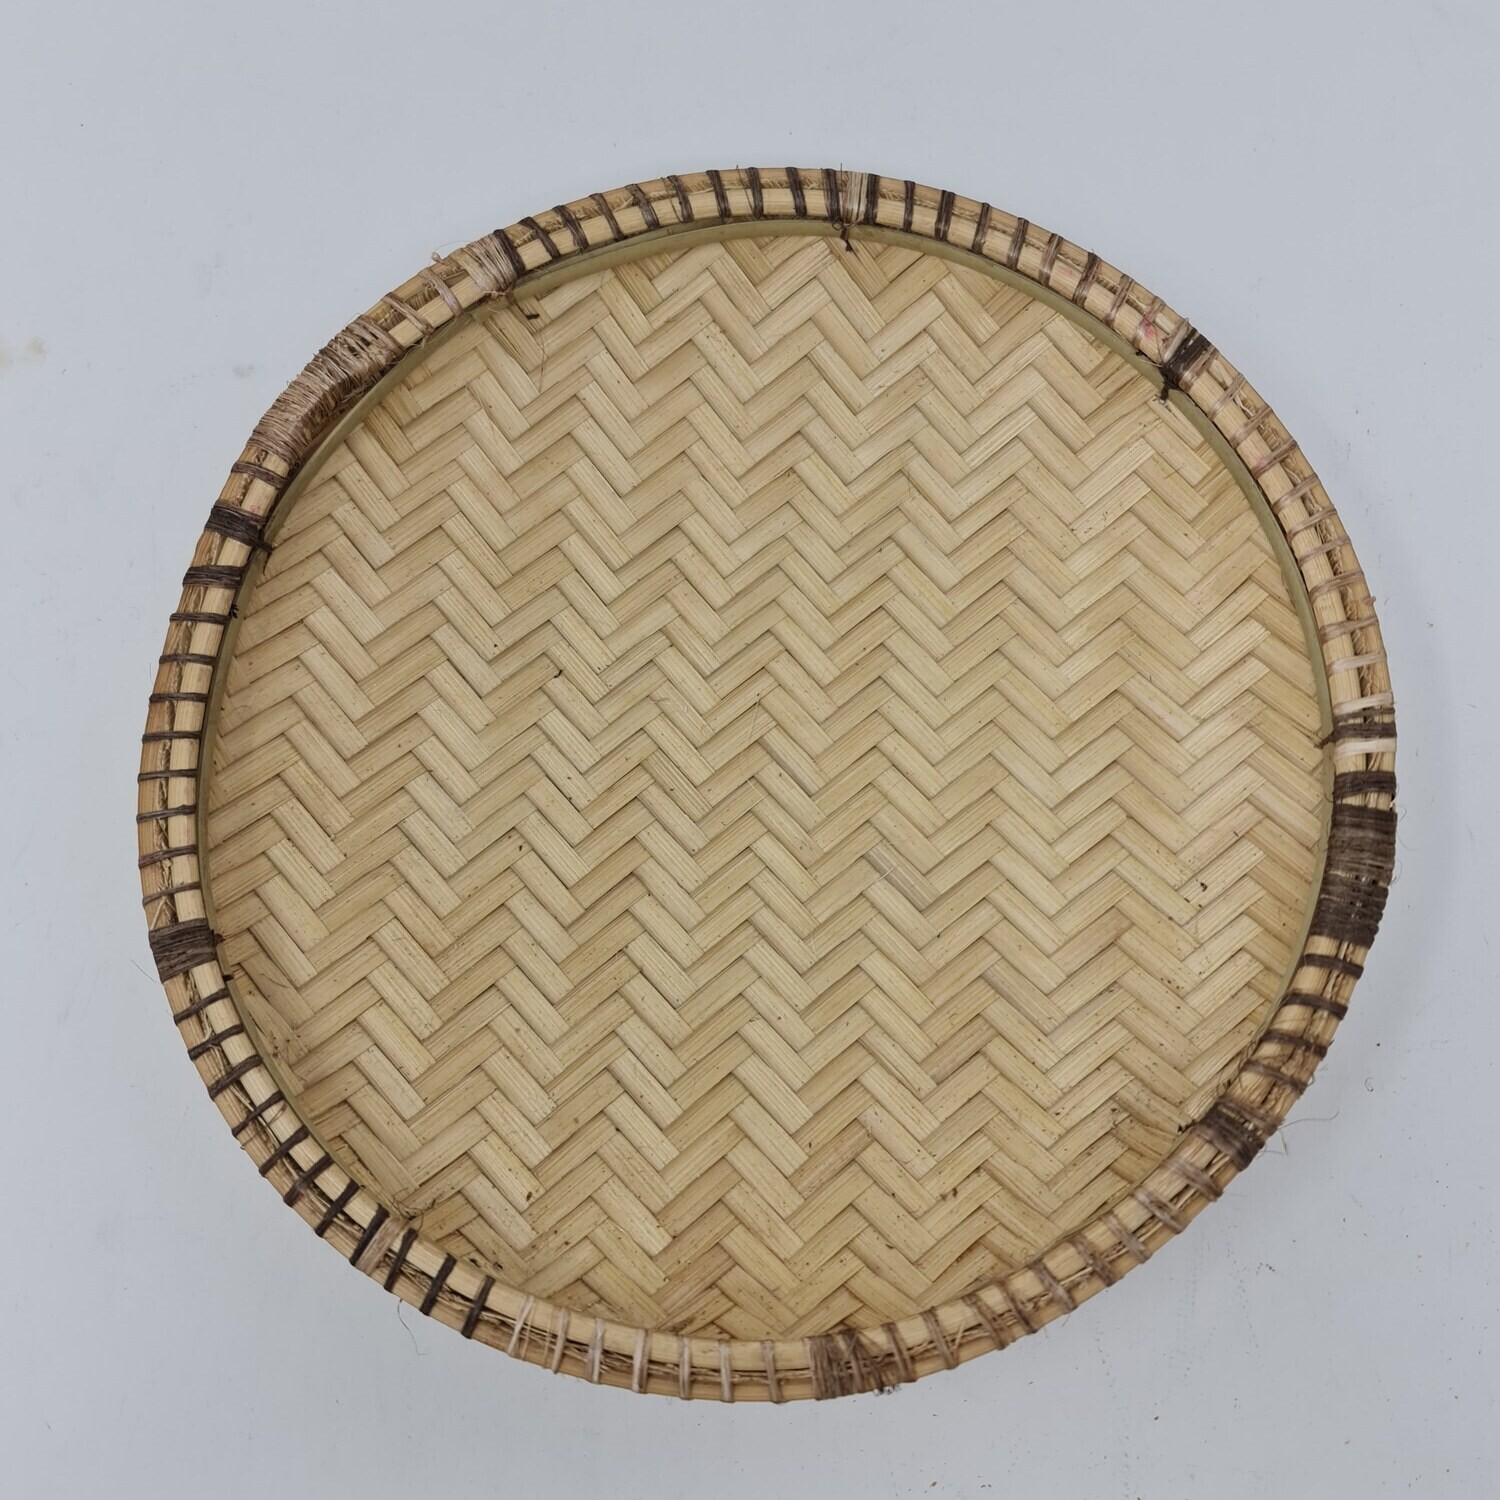 Ungo Hand-Weaved Basket - 26cm